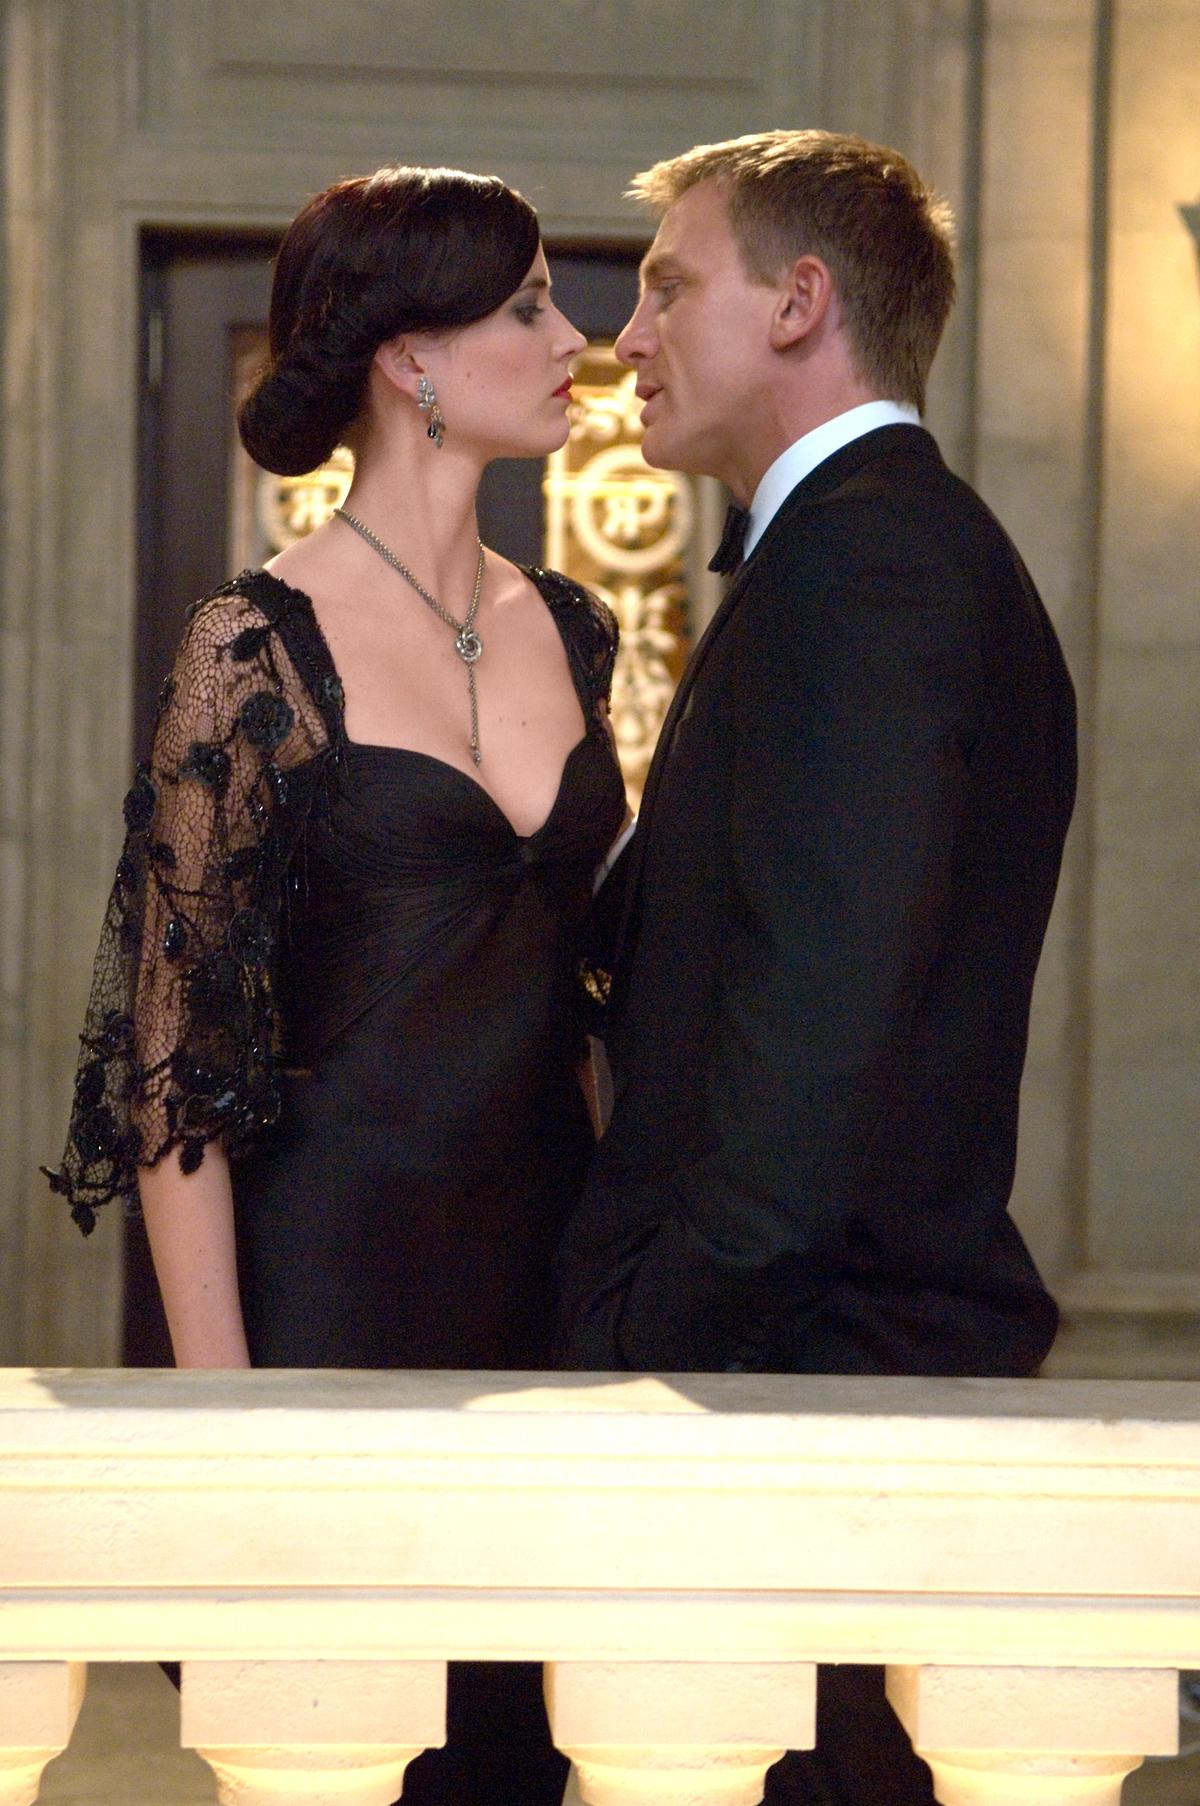 Im Bild: Ihre Anziehung zueinander bringt sie in große Gefahr und prägt sein Leben für immer: Vesper Lynd (Eva Green, l.) und James Bond (Daniel Craig, r.).